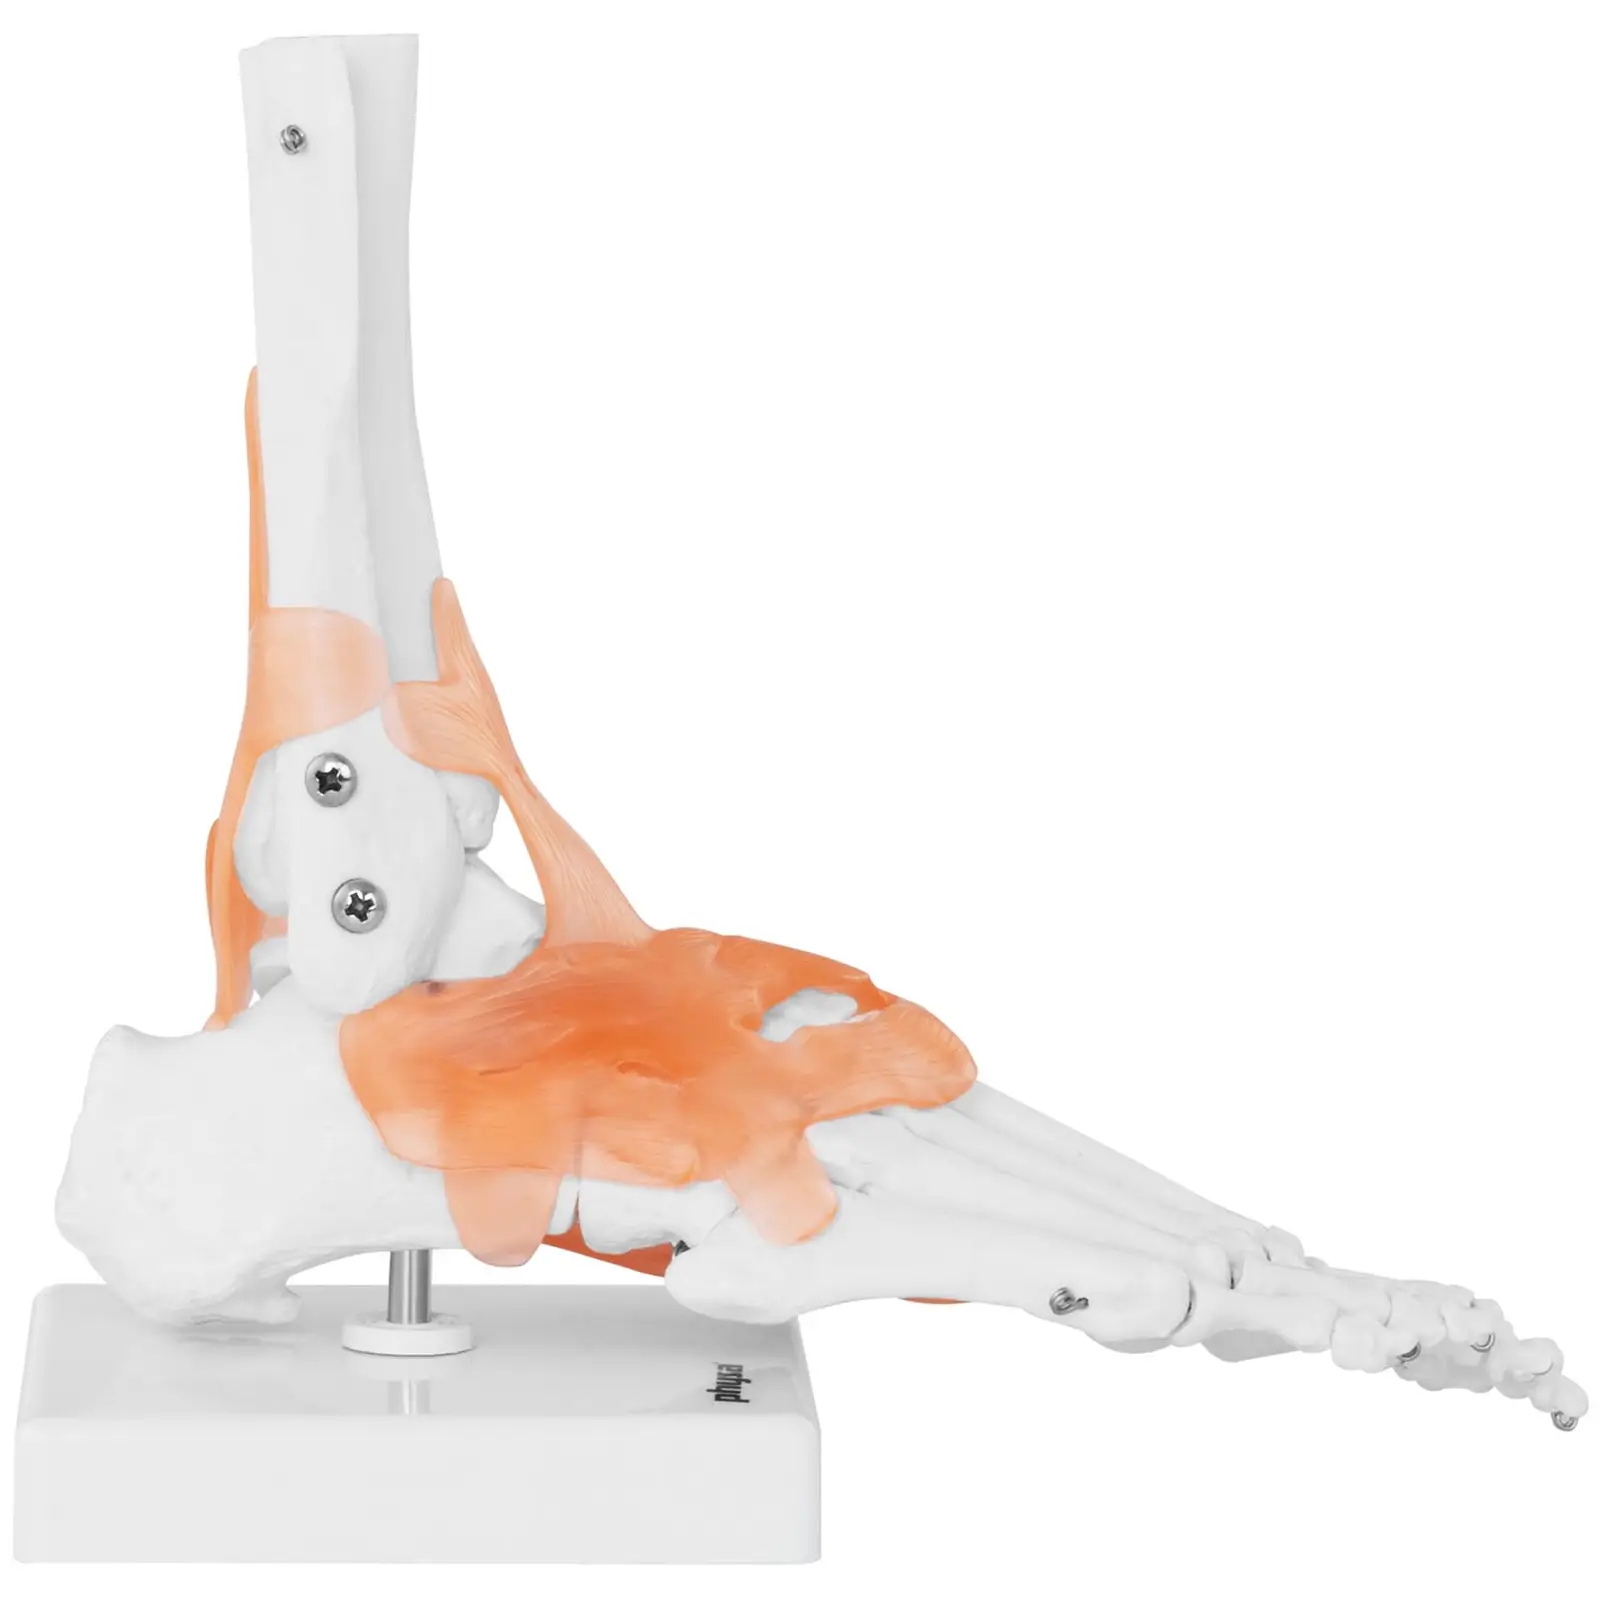 Anatominen malli - jalka- sis. nivelsiteet ja nivelet